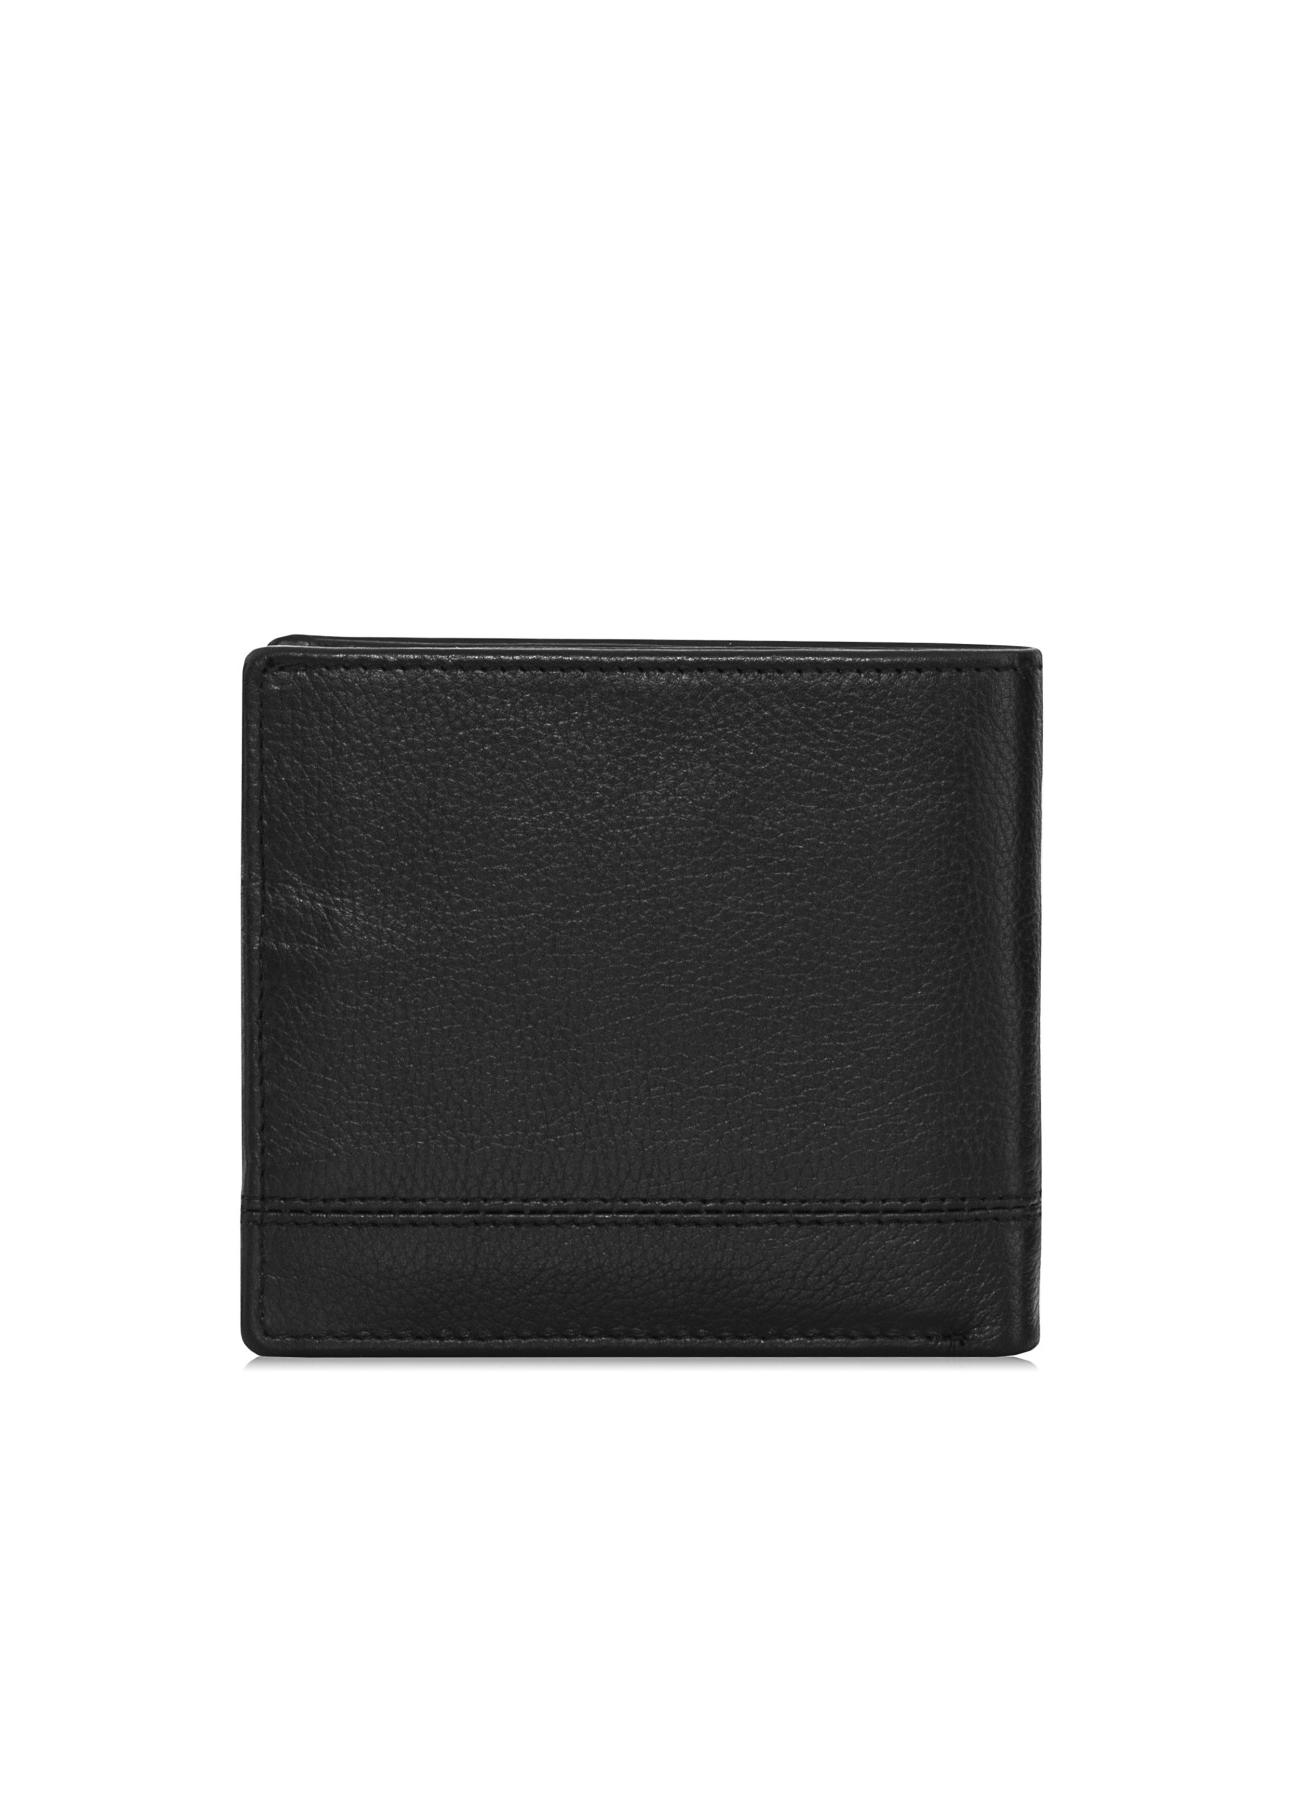 Czarny skórzany portfel męski PORMS-0009-99(W24)